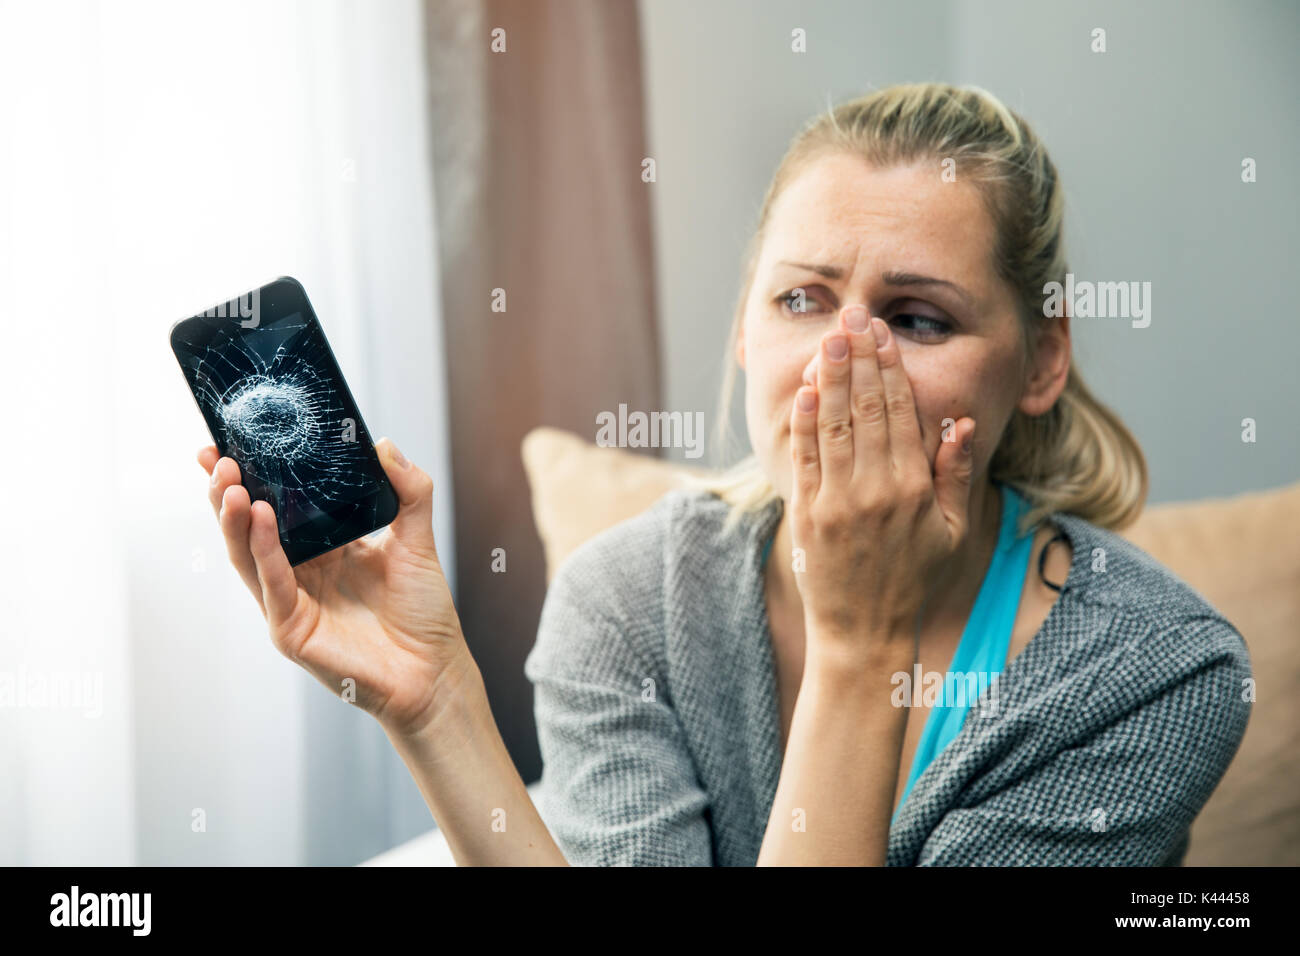 Sad woman holding smart phone avec écran cassé dans la main Banque D'Images